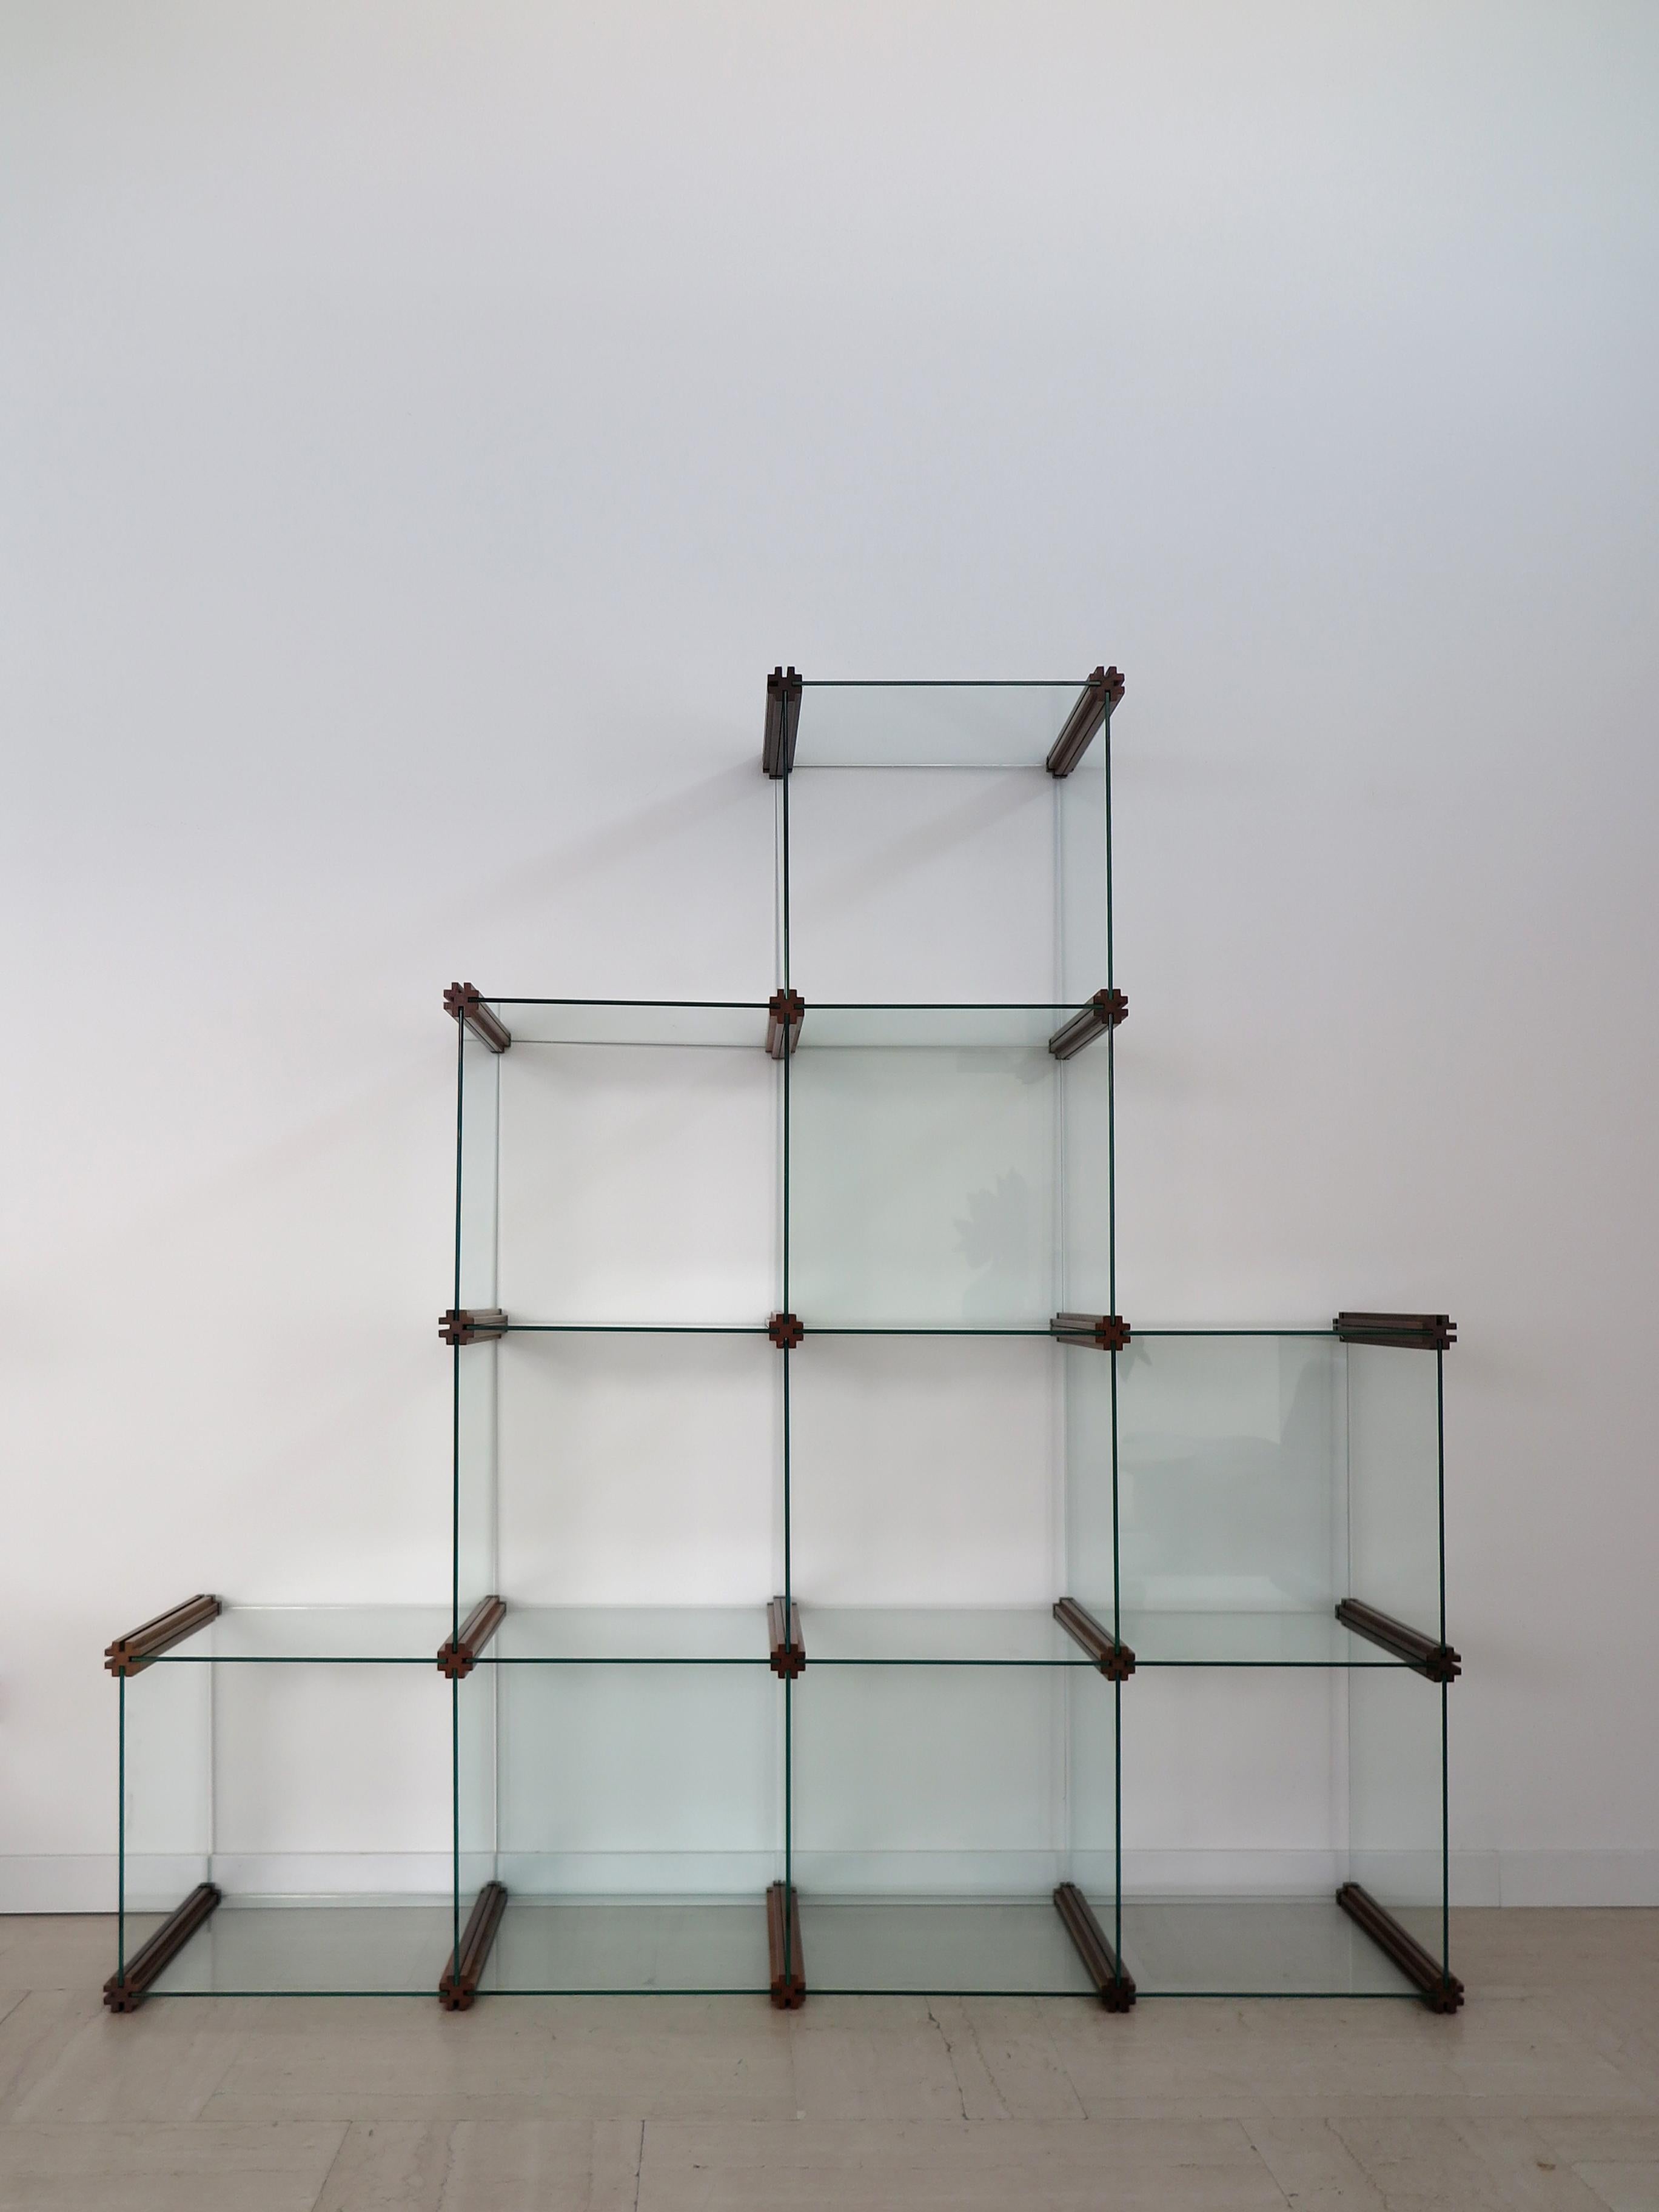 Bibliothèque italienne modulaire en verre, conçue par Pierangelo Gallotti et produite par Gallotti e Radice, avec des éléments modulaires en verre imbriqués les uns dans les autres sur des cadres en bois massif façonnés, fabriquée en Italie en